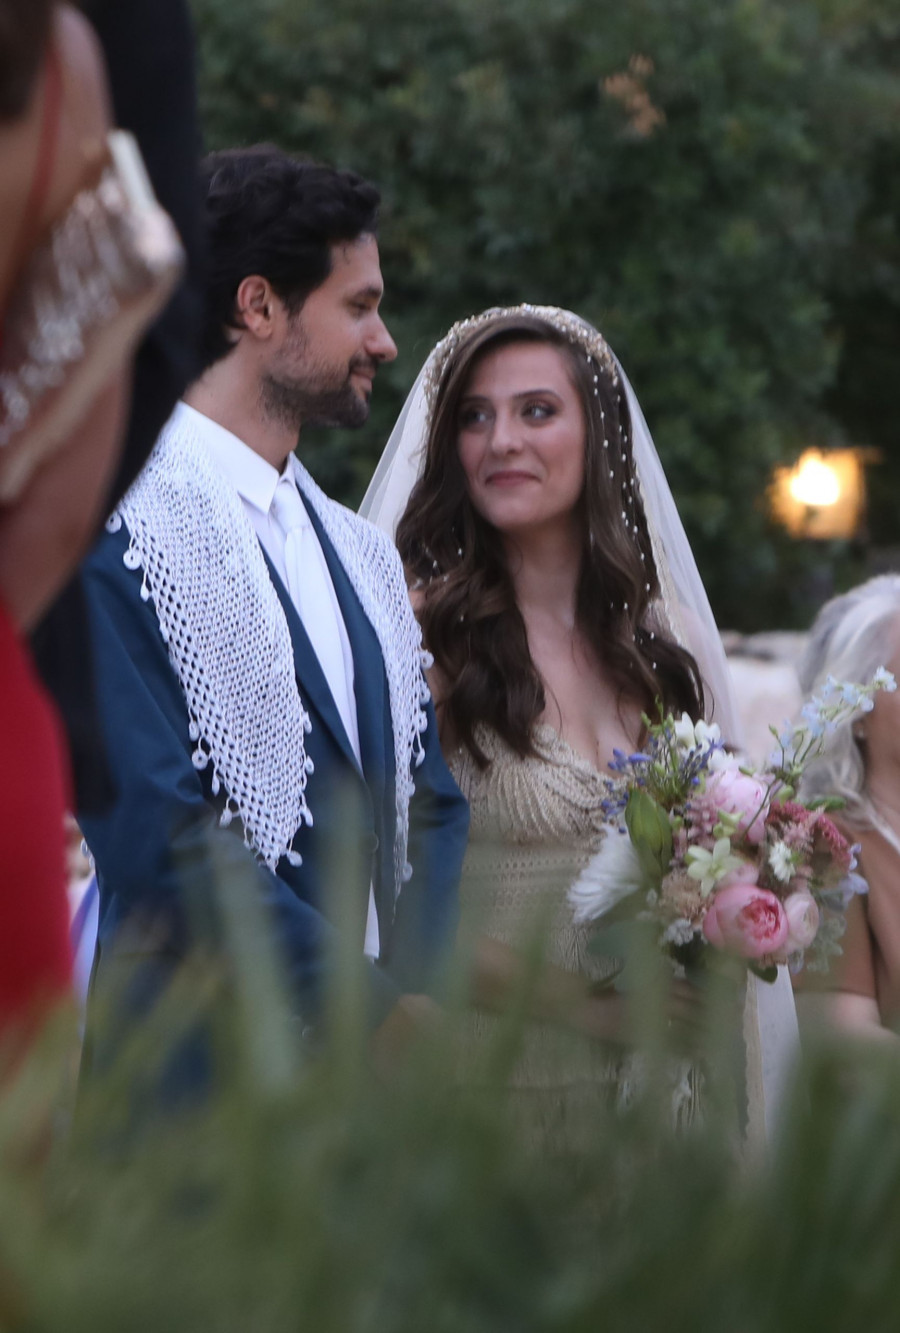 Παραδοσιακός γάμος για Ορφέα Αυγουστίδη - Γεωργία Κρασσά! (εικόνες)